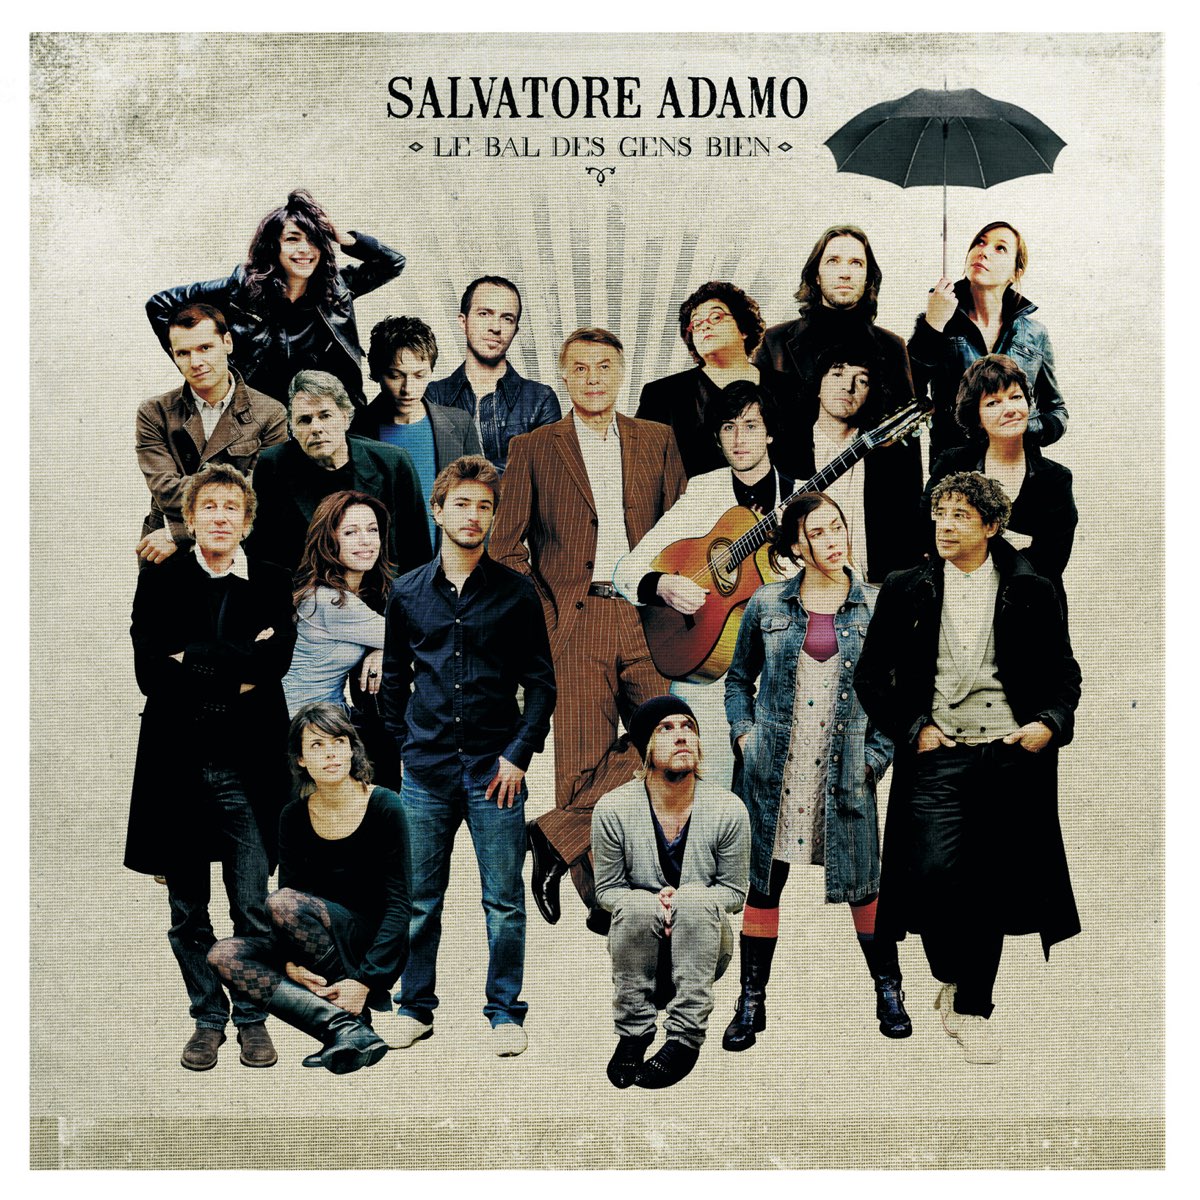 Le bal des gens bien par Salvatore Adamo sur Apple Music